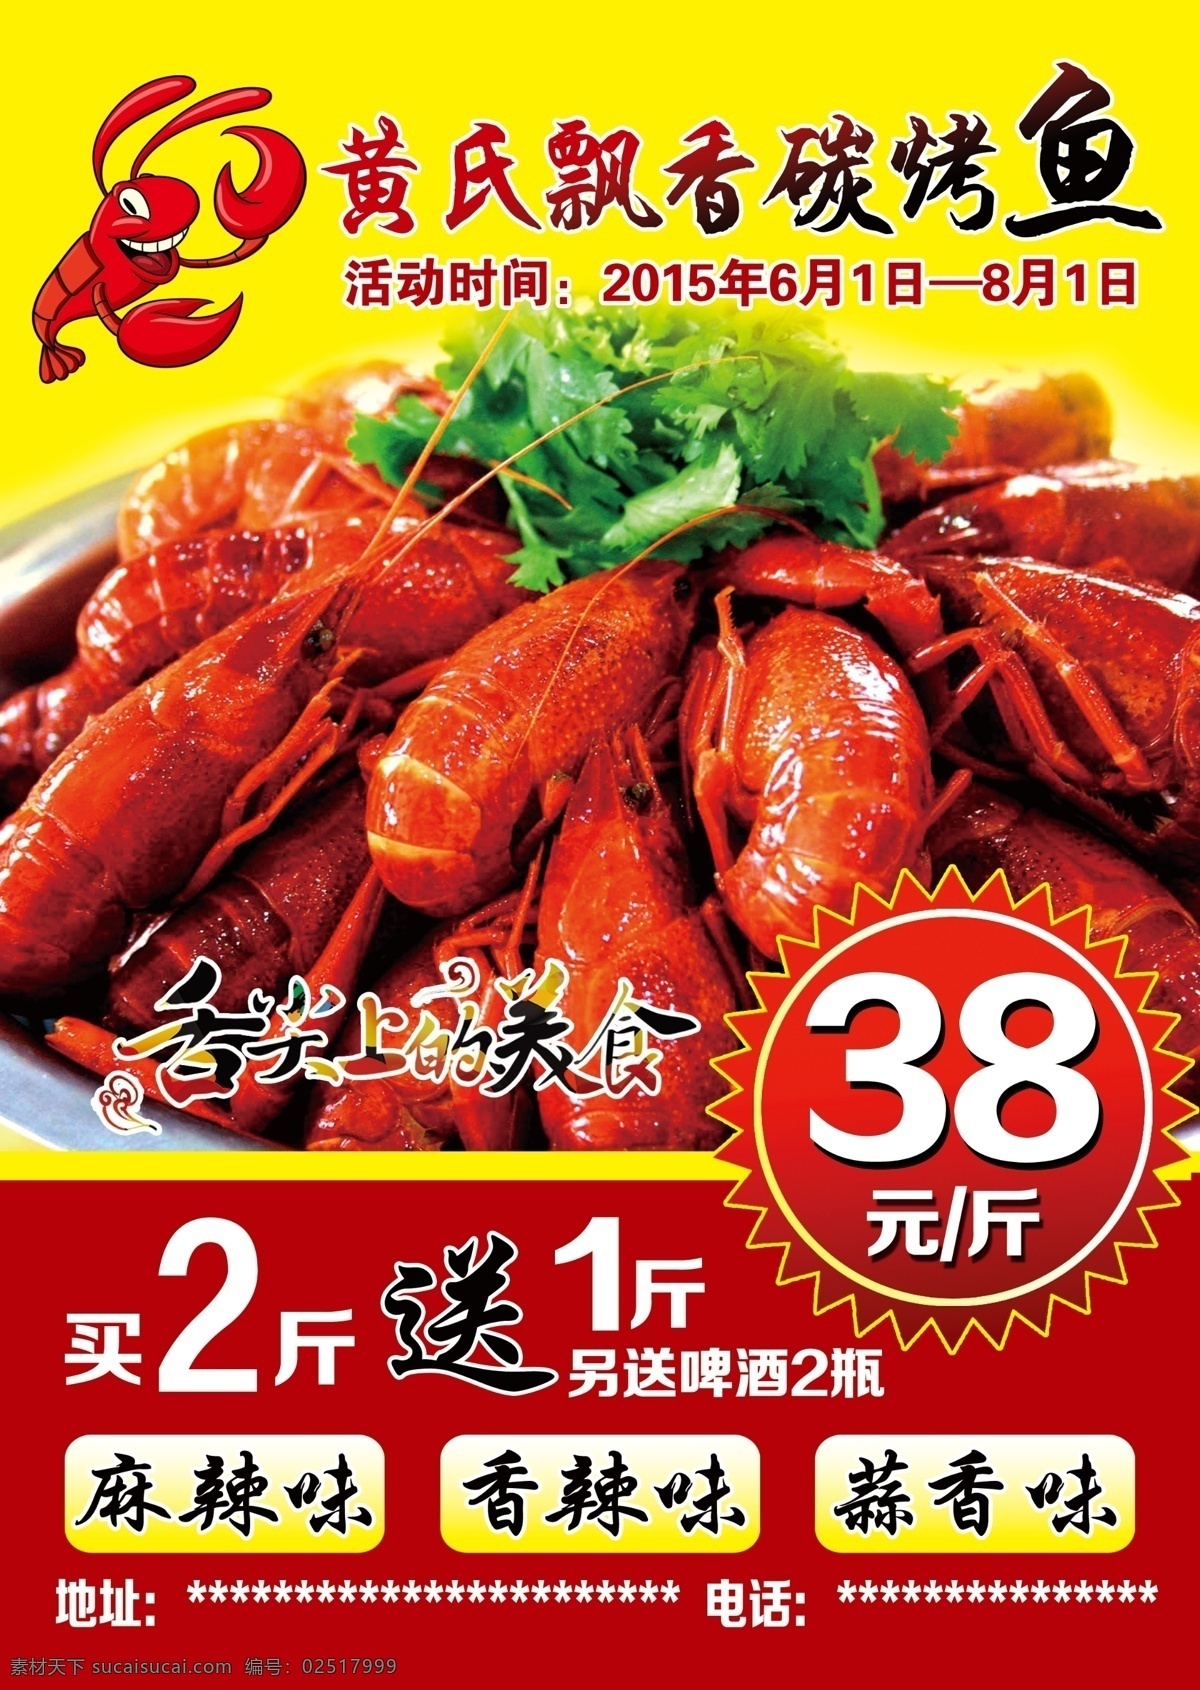 龙虾 虾 宣传单 美食 传单 菜单 舌尖上的美食 红色